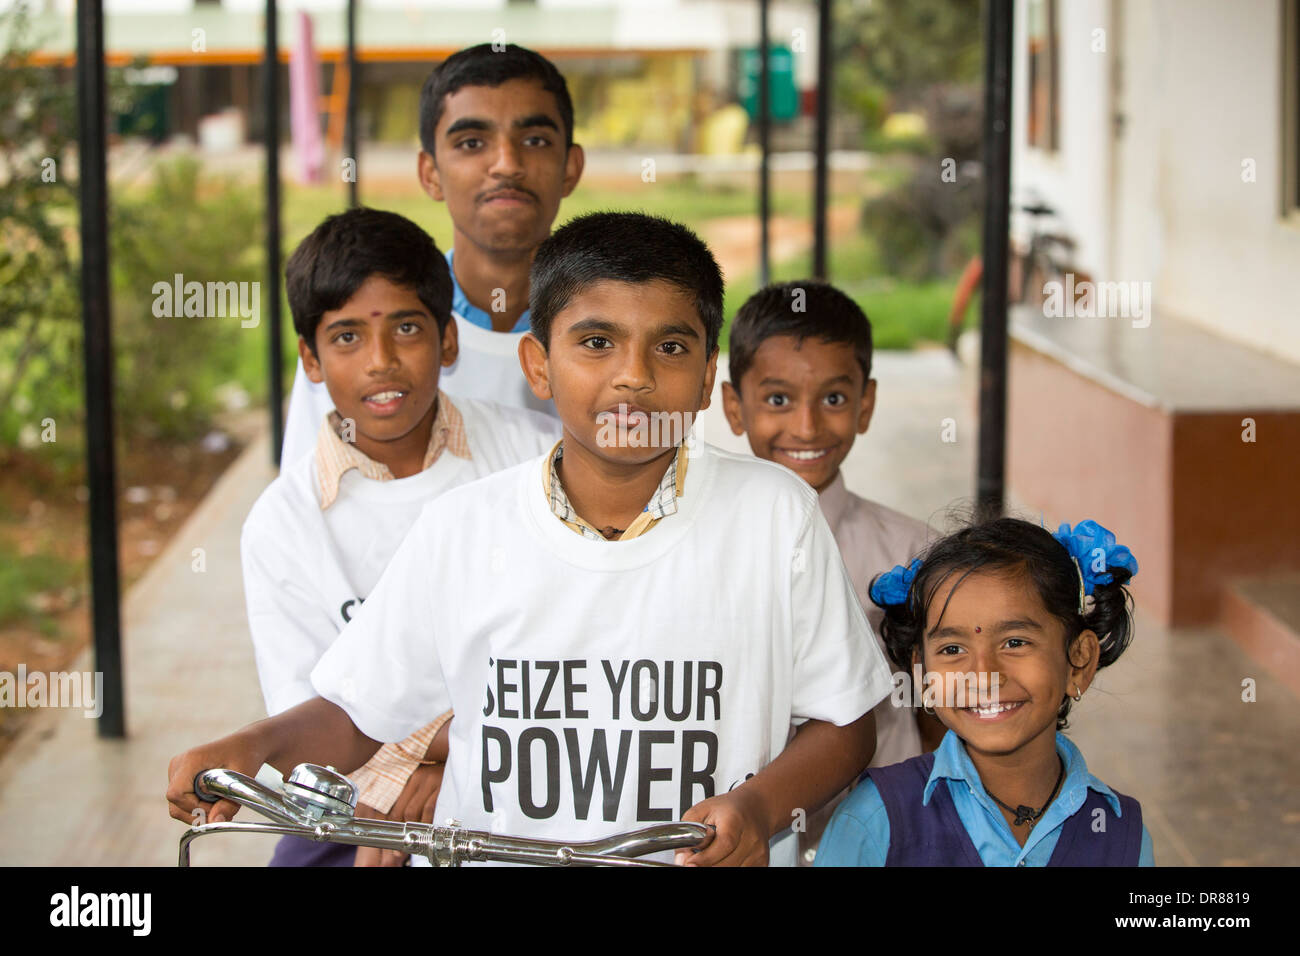 Enfants portant le WWF Saisir votre puissance T shirts, une campagne pour promouvoir l'énergie renouvelable, Bangalore, Inde. Banque D'Images